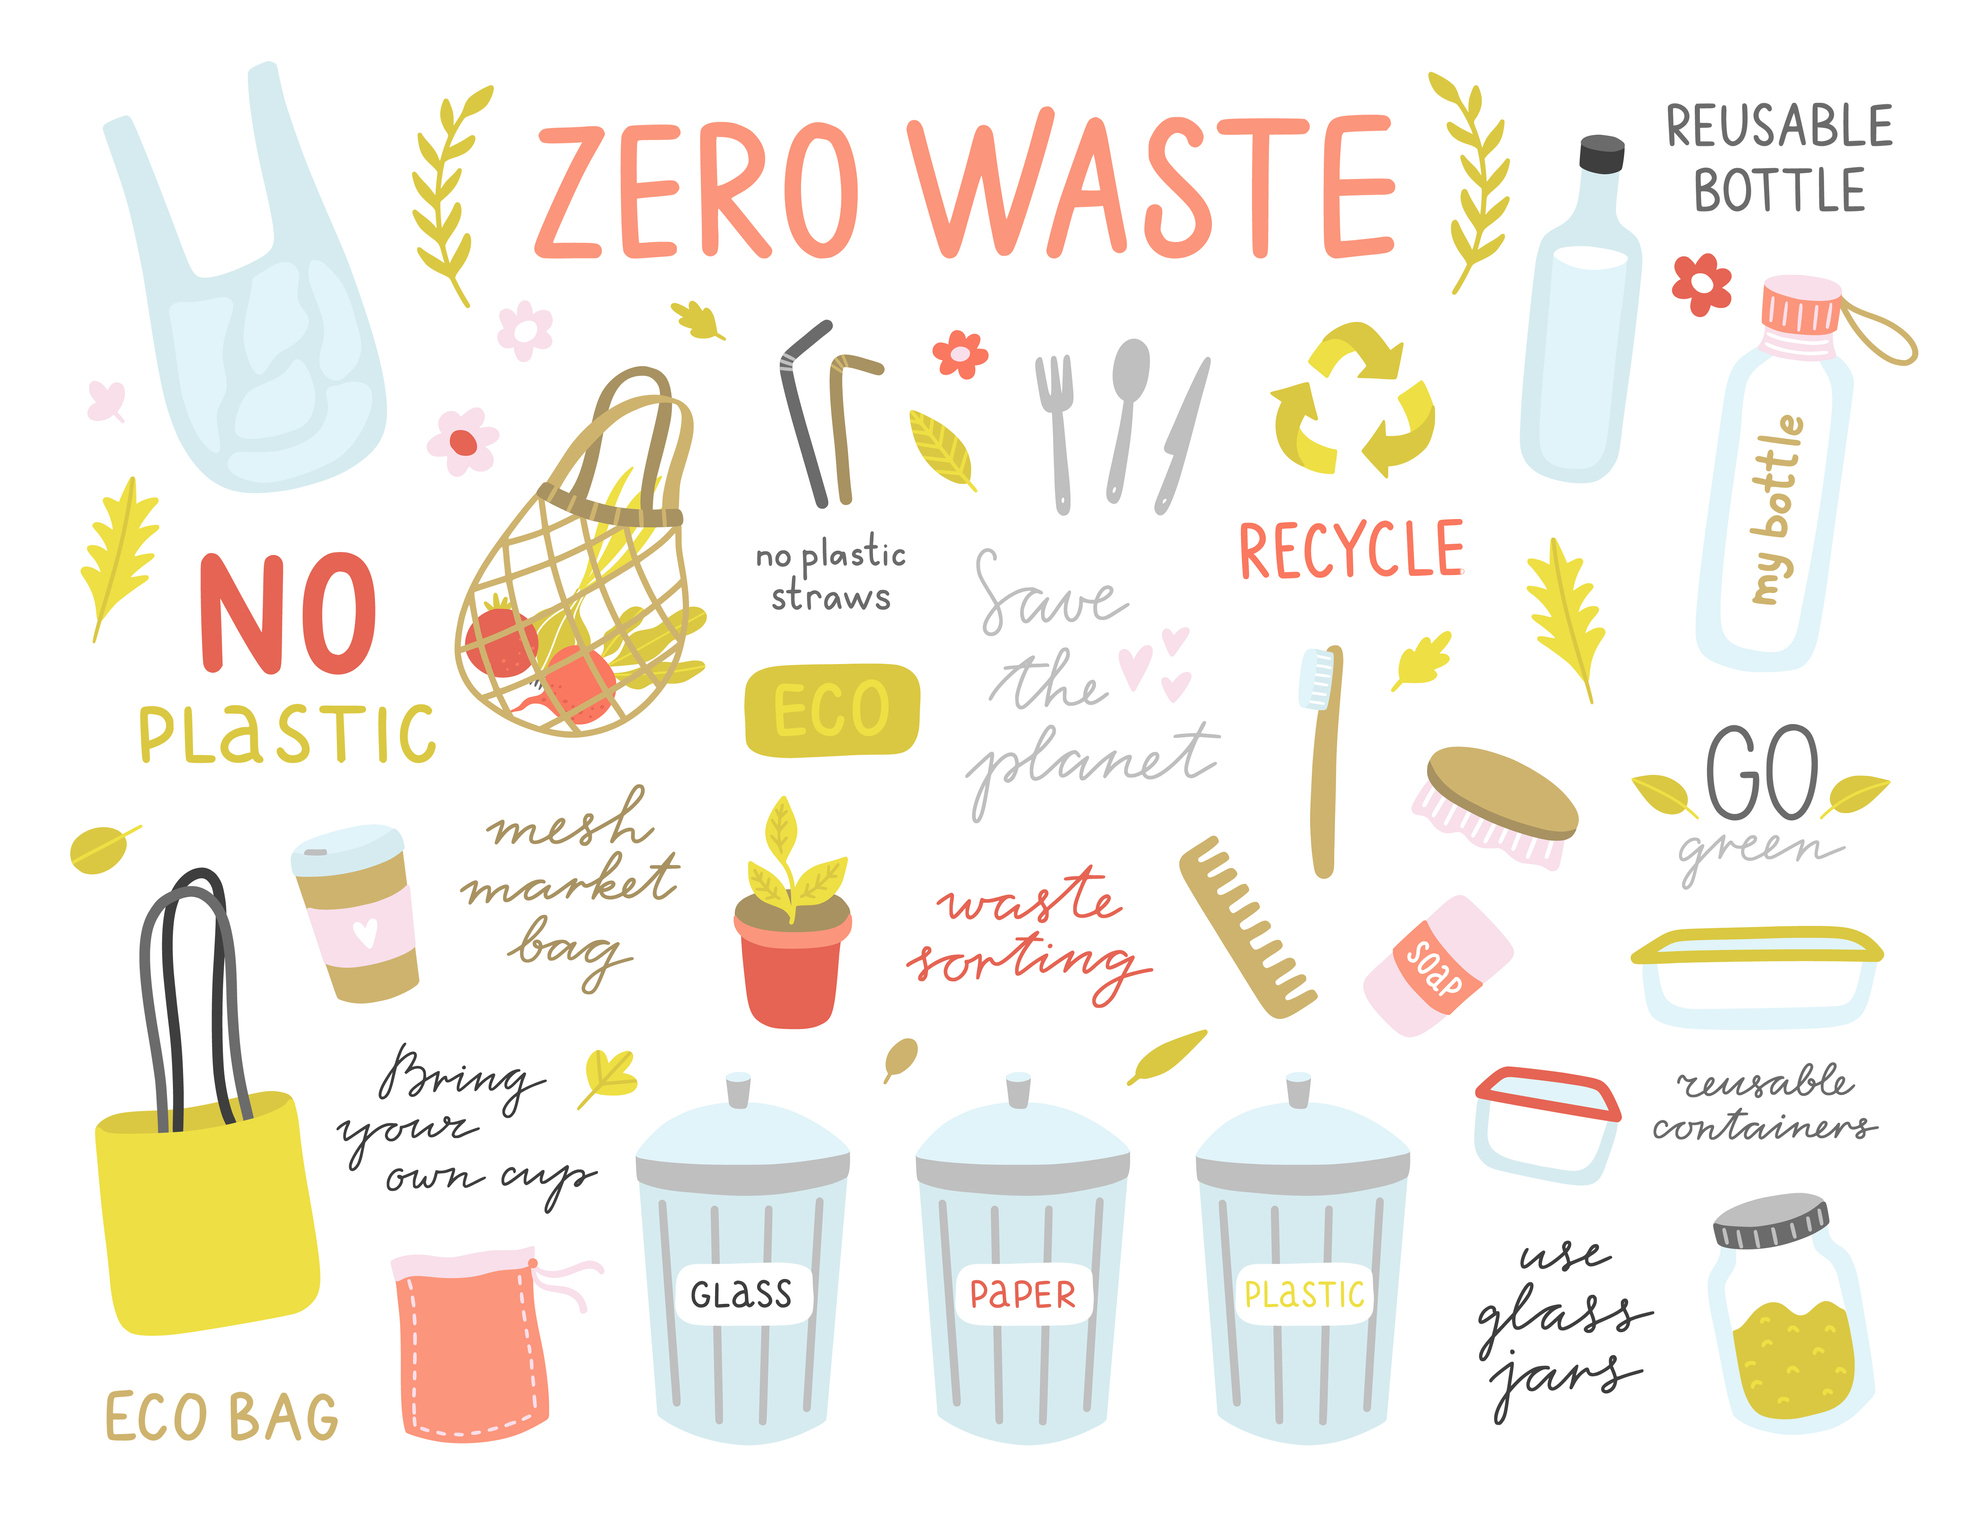 Zero-waste living tips